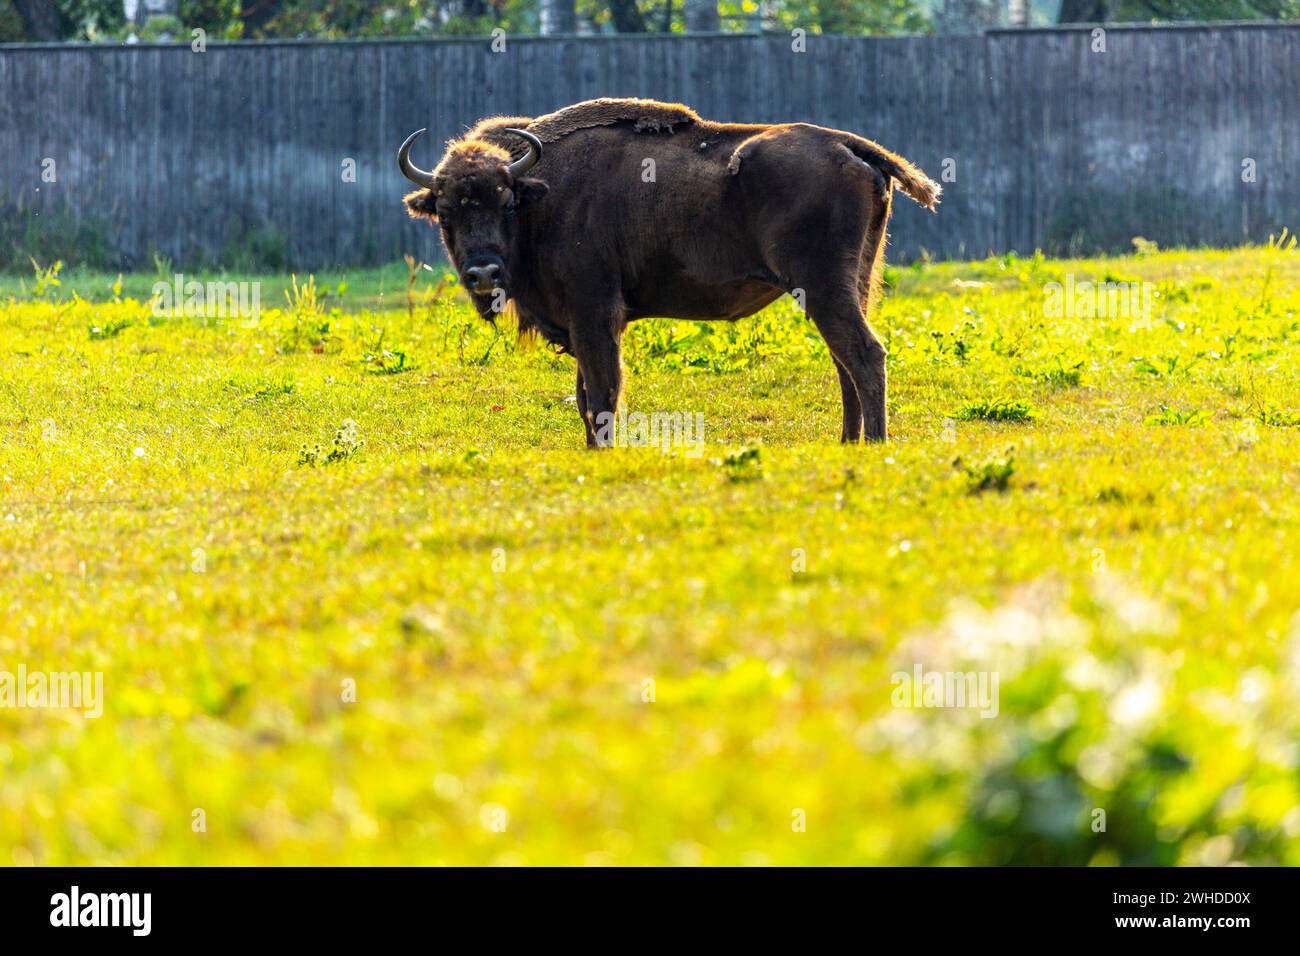 Europe, Poland, Warmian-Masurian Voivodeship, Puszcza Borecka / Borecka Forest, Zagroda zubrow in Wolisko / The bison's farm in Wolisko Stock Photo